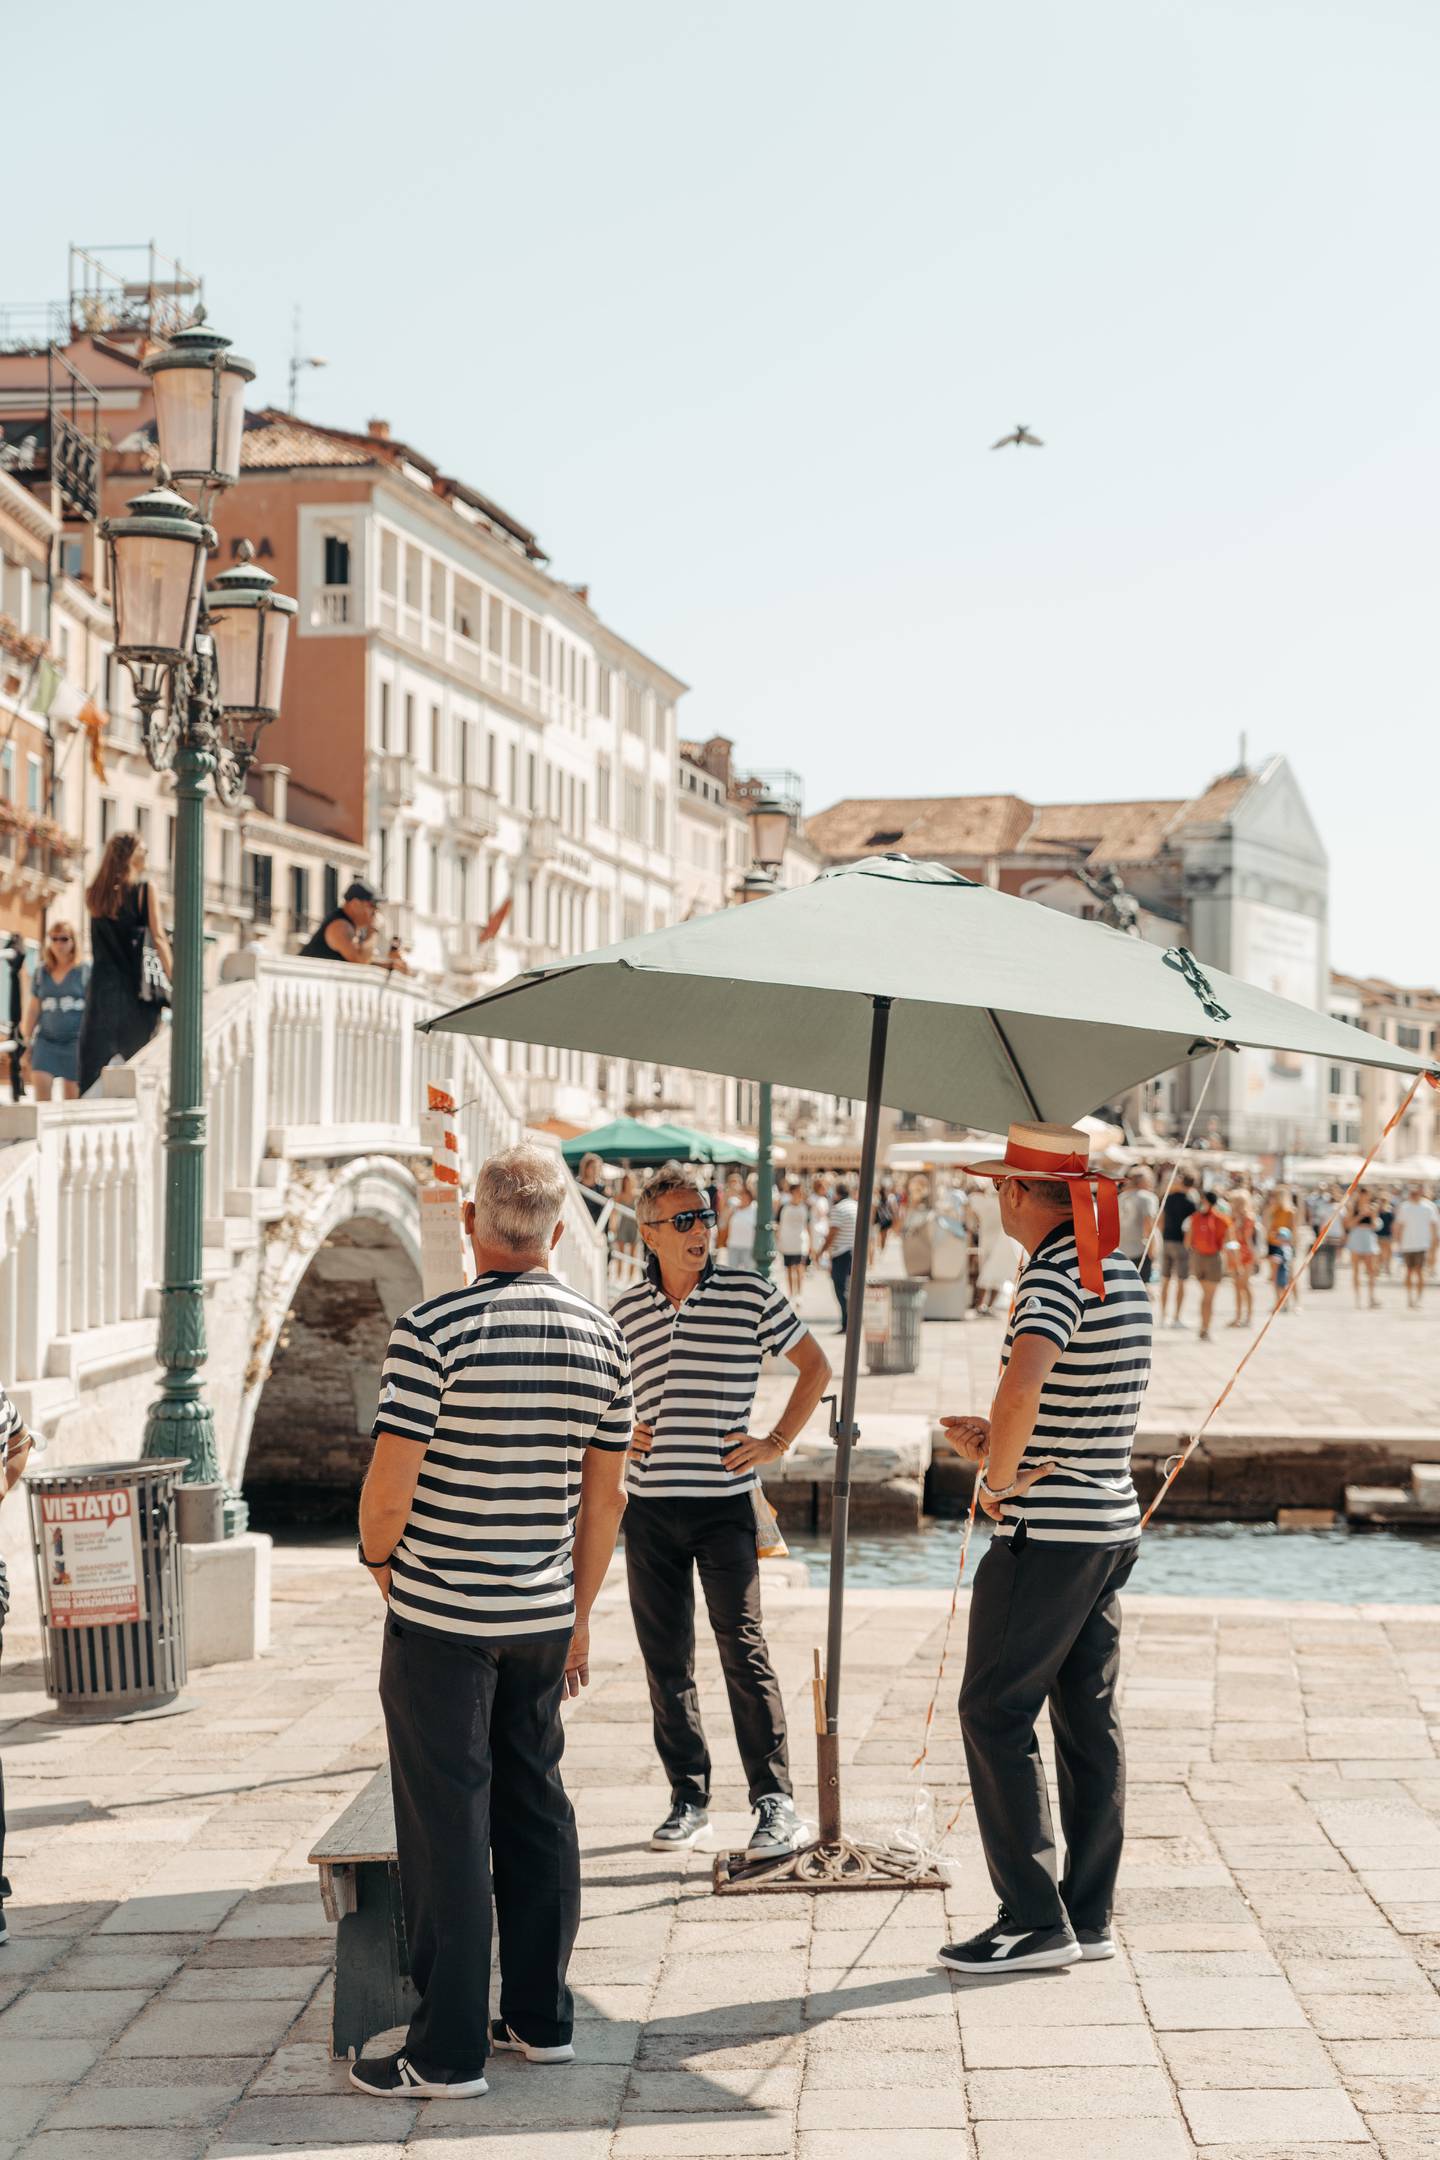 Venice's famed gondoliers. Photo: Floris Christiaans / Unsplash